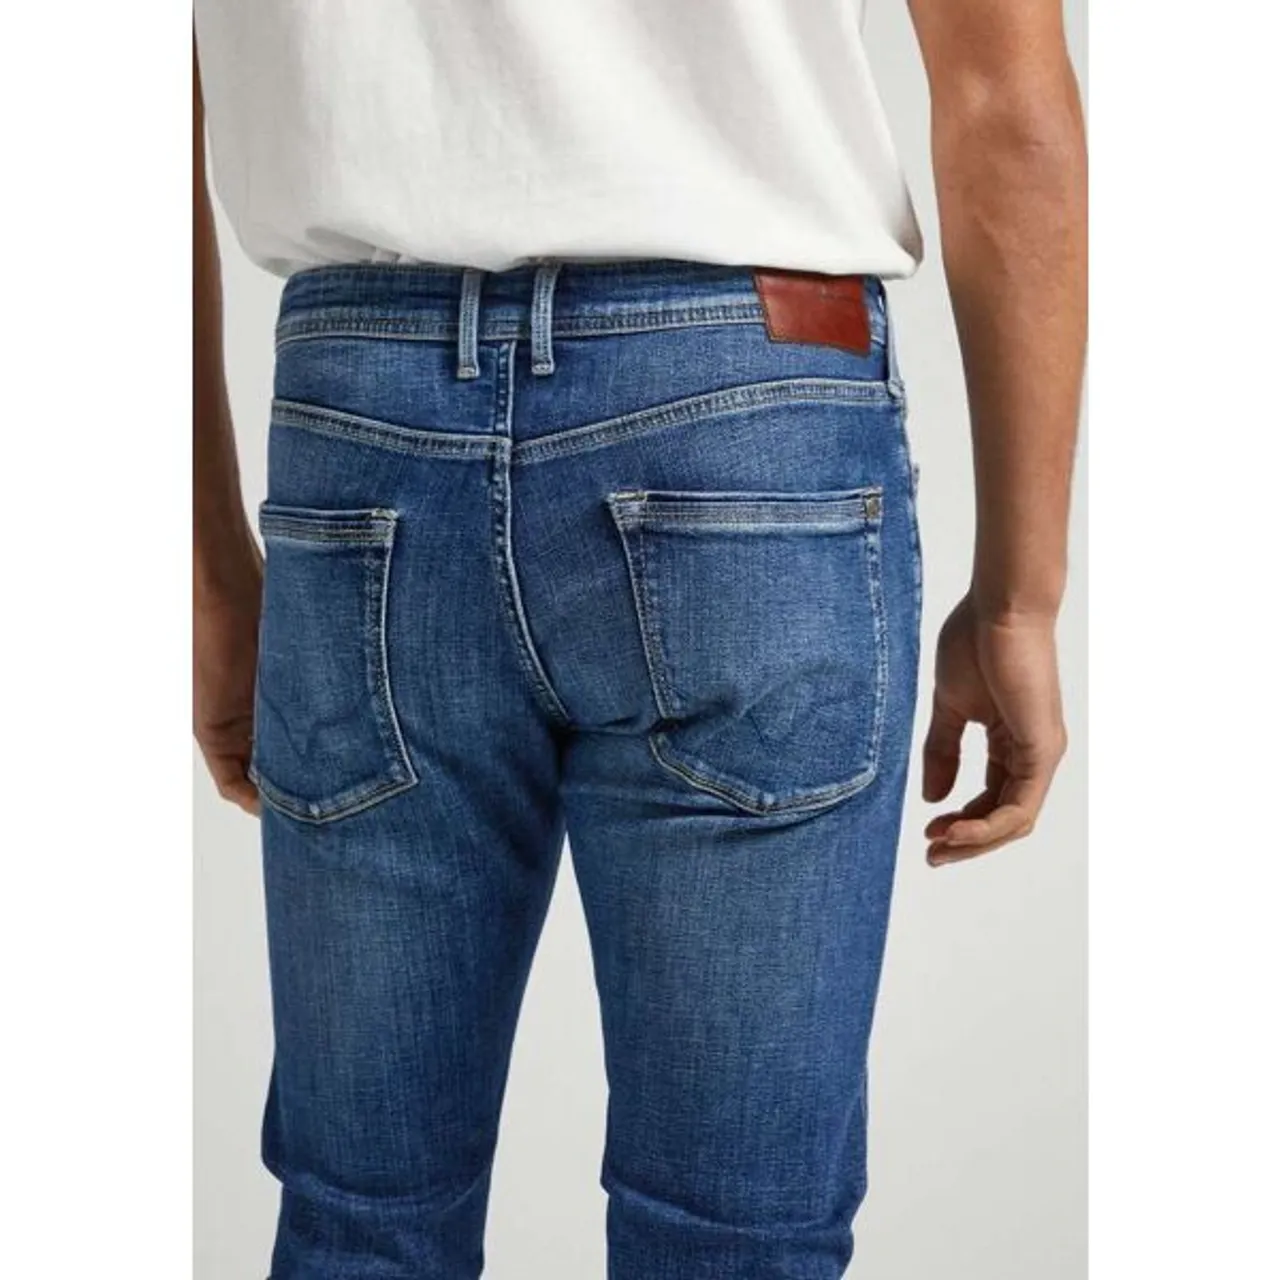 Regular-fit-Jeans PEPE JEANS "STANLEY" Gr. 33, Länge 34, blau (medium used powerfle) Herren Jeans Regular Fit